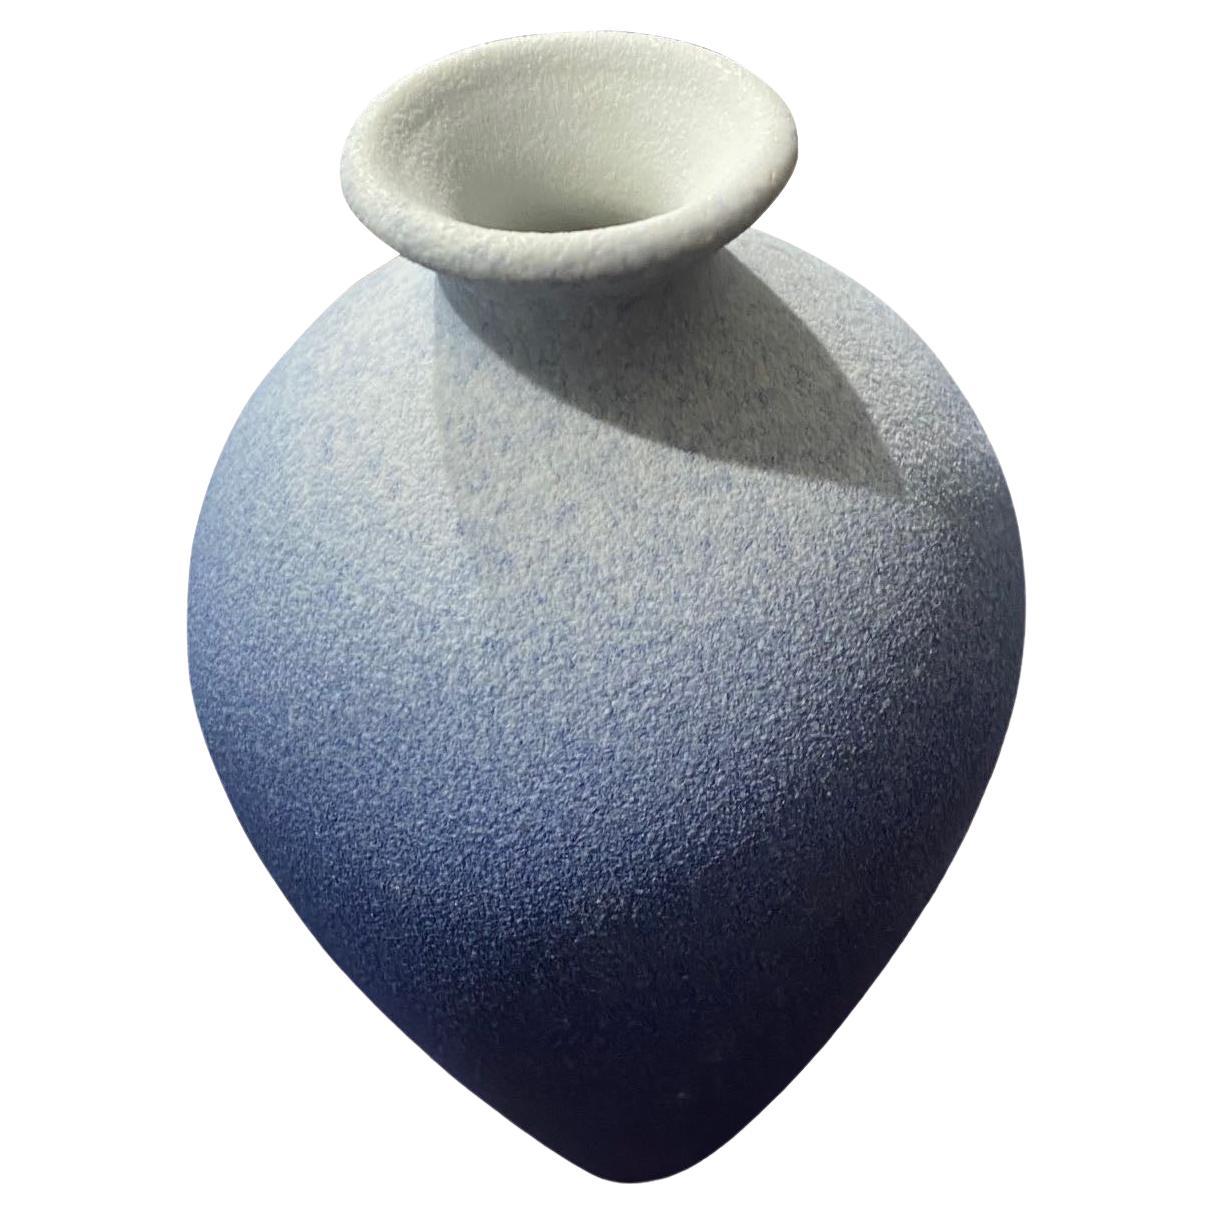 Vase contemporain chinois à glaçage bleu ombre.
Forme classique avec une ouverture de bec mince.
Fait partie d'une grande collection.